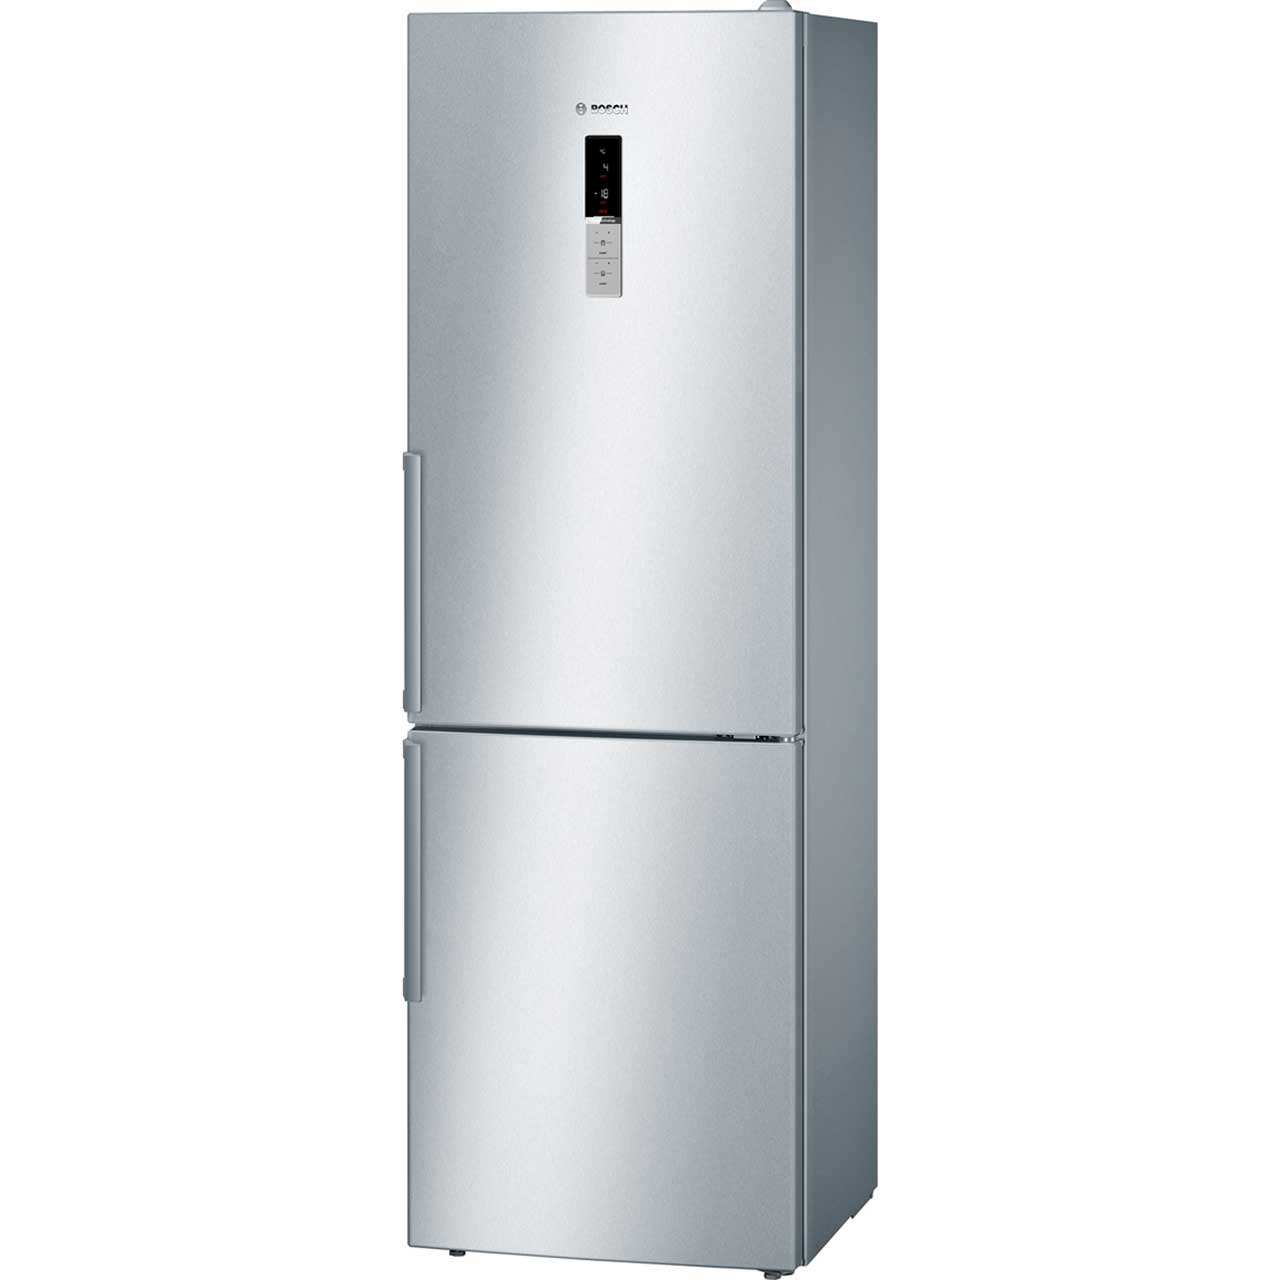 Bosch Serie 6 KGN36HI32 Free Standing Fridge Freezer Frost Free in Stainless Steel Look